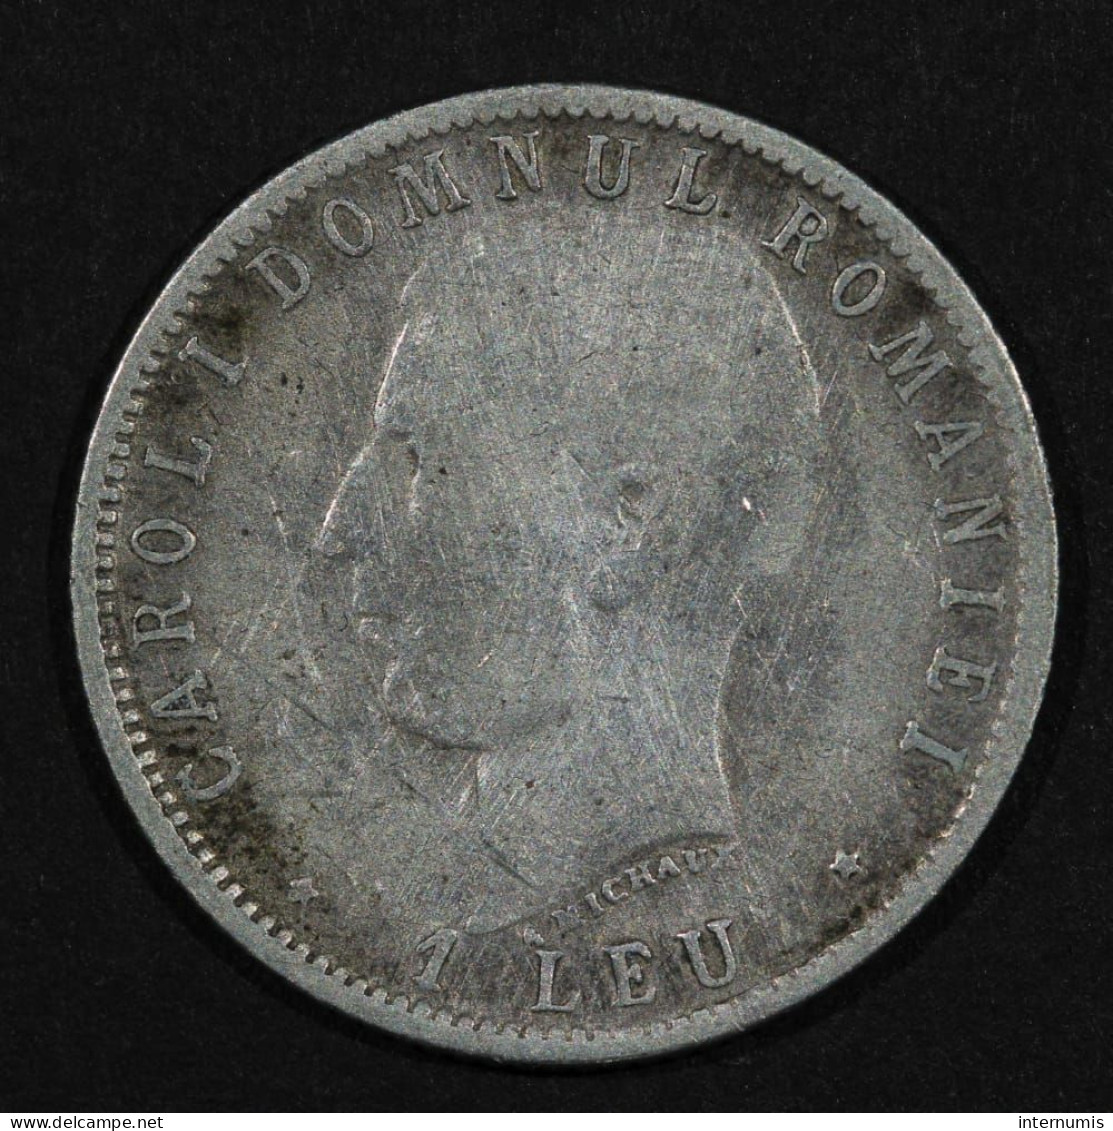 Roumanie / Romania, 1 Leu, 1866 - 1906, Argent (Silver), TB+ (VF), KM#34 - Roumanie